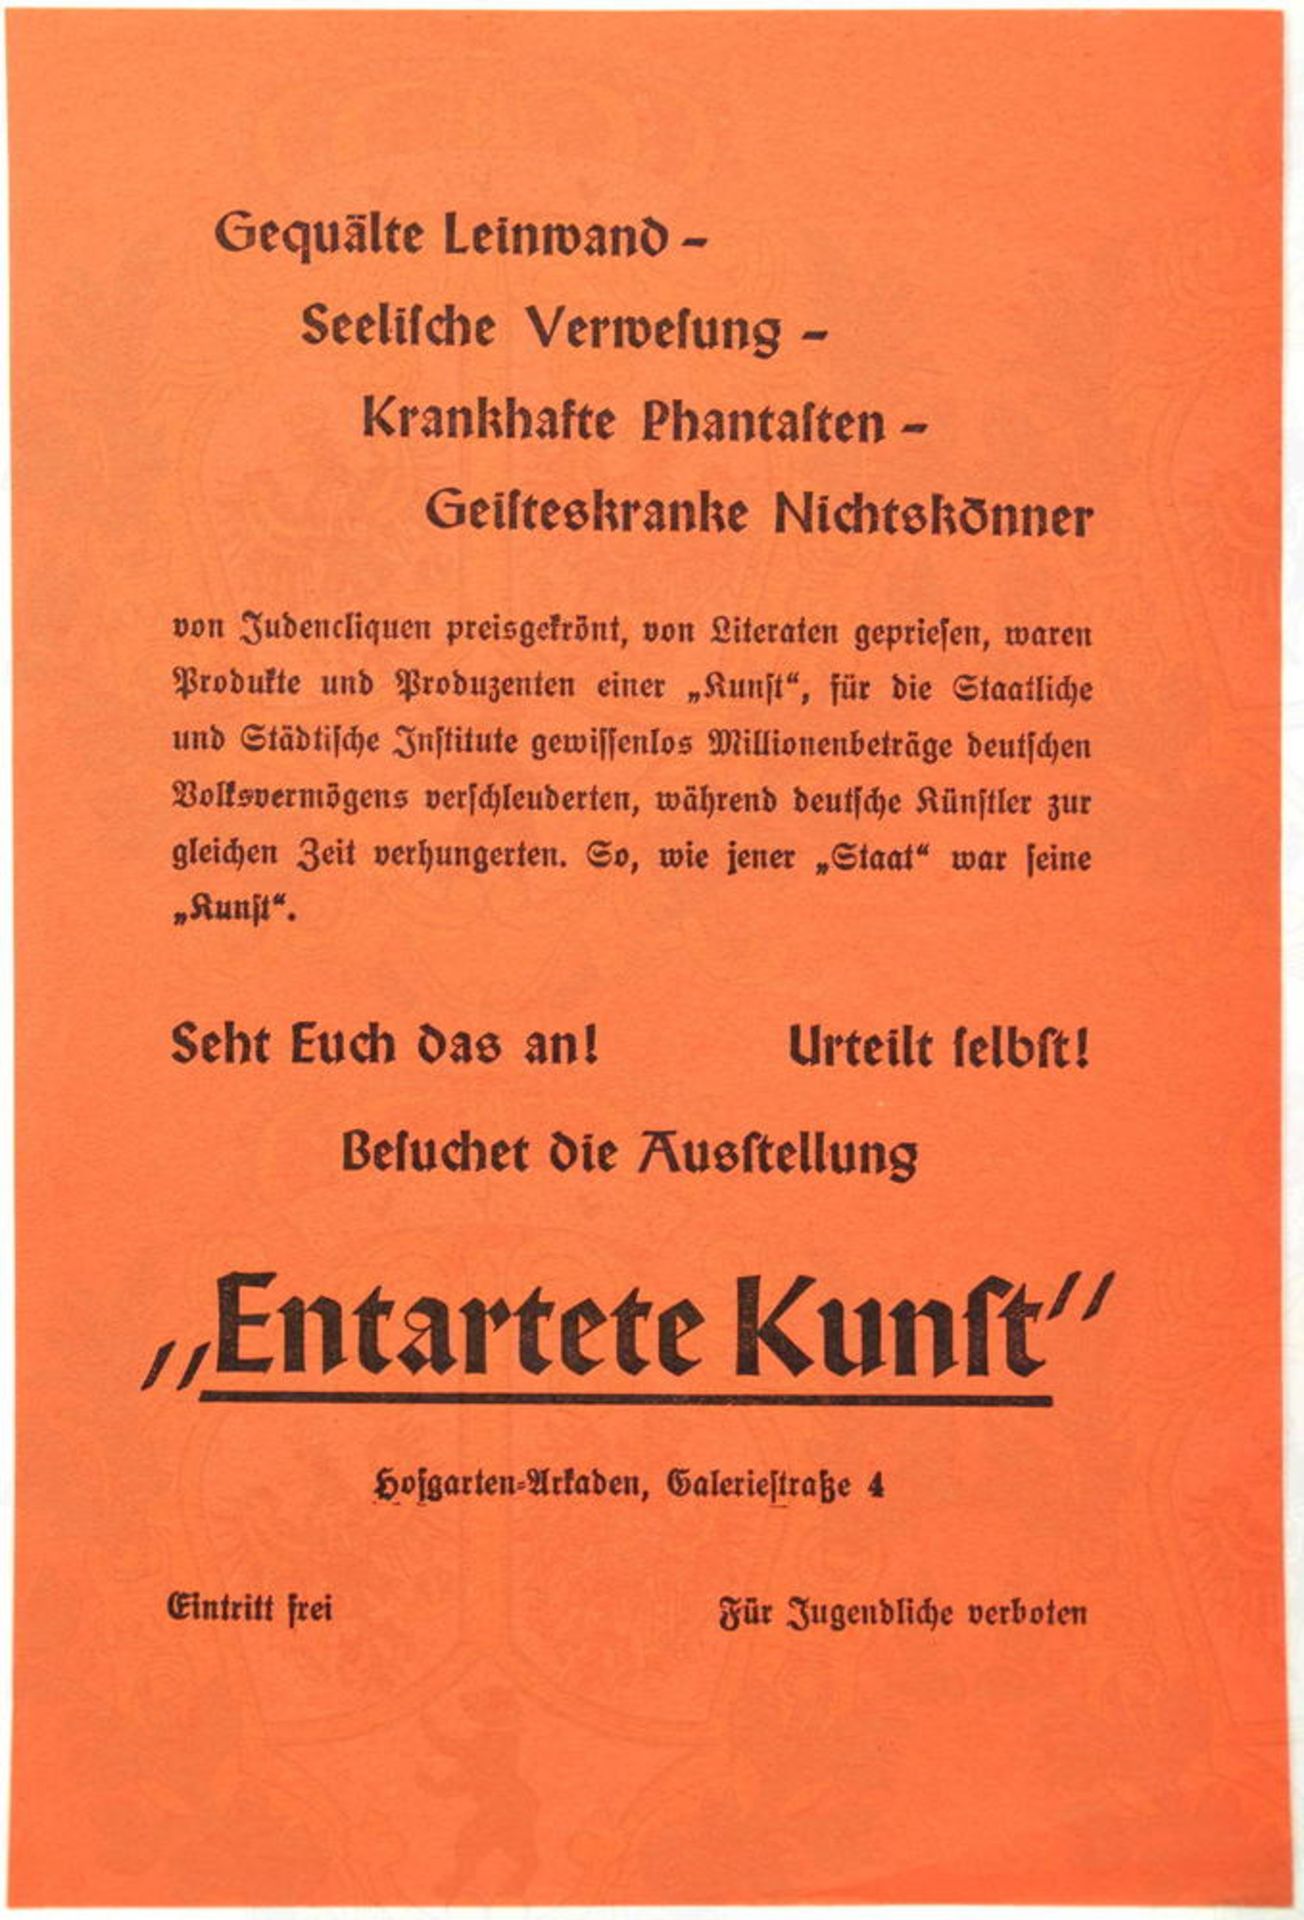 WERBEZETTEL AUSSTELLUNG „ENTARTETE KUNST“, München 1937, Hofgarten-Arkaden, rotes Papier, bez. „Kran